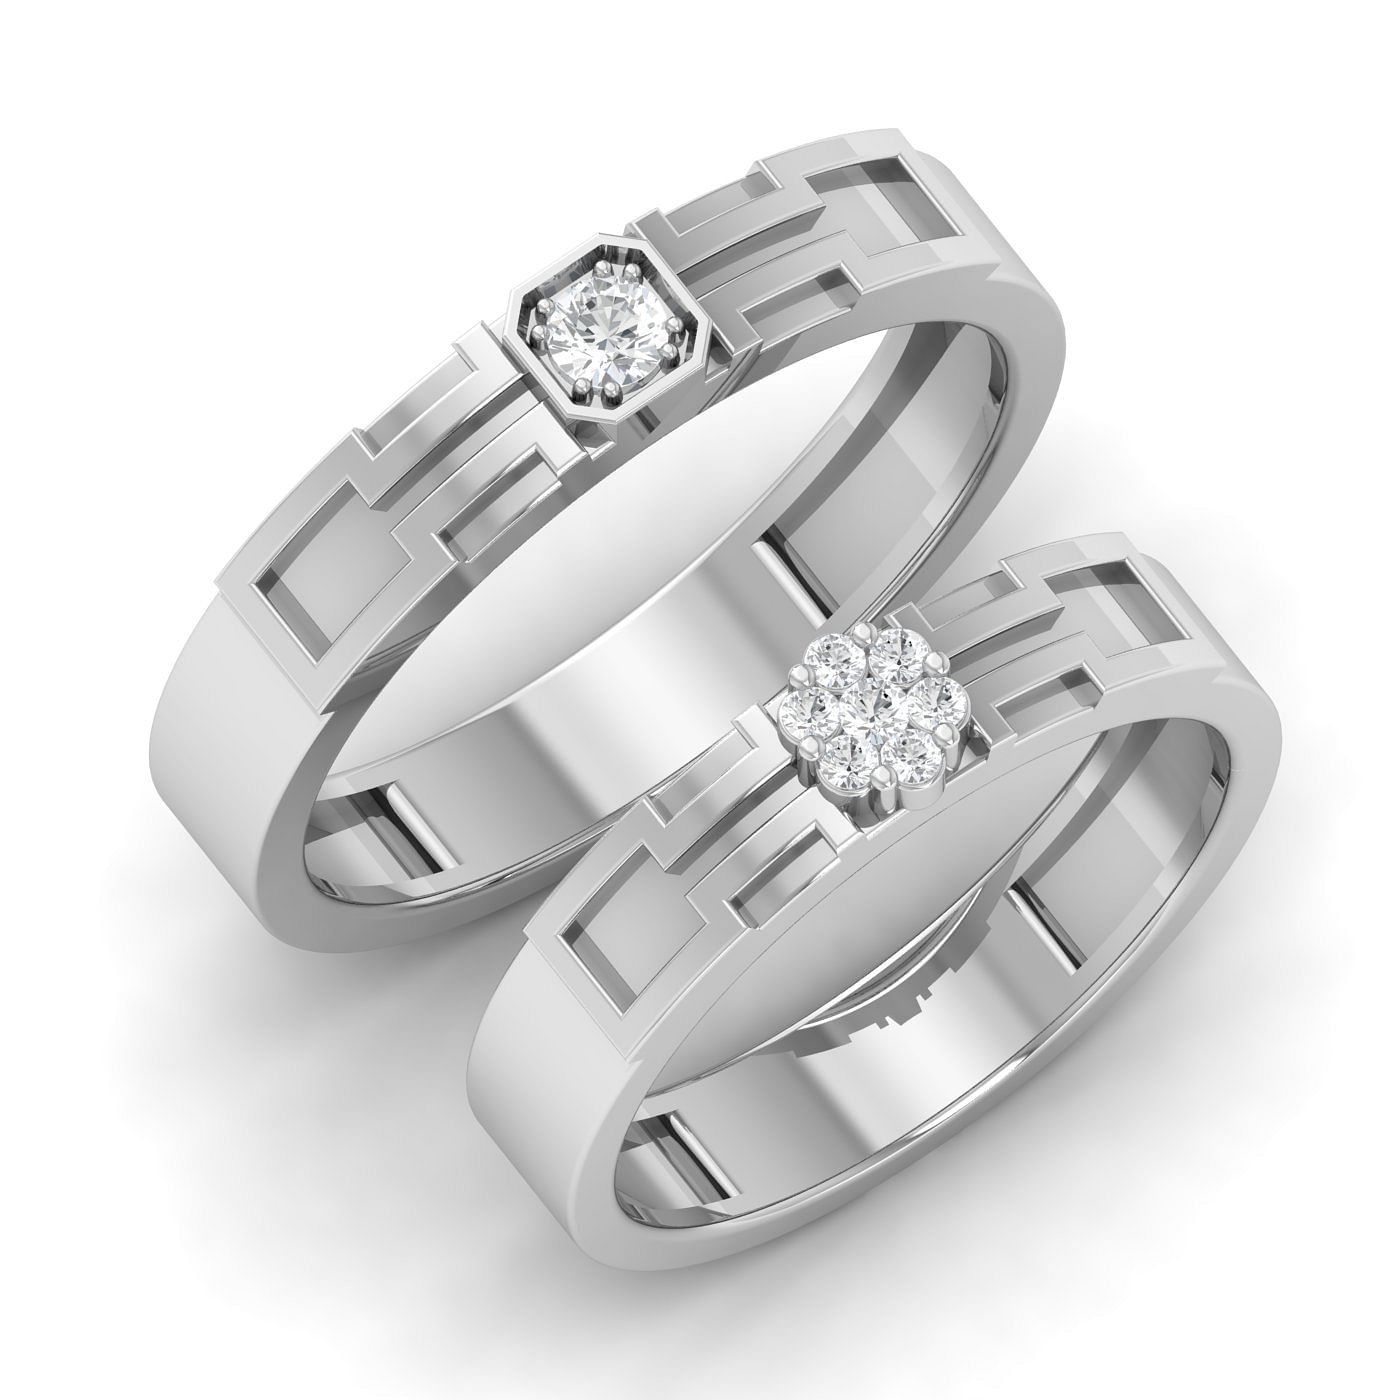 Xavier Modern Design Couple Rings Pure White Gold